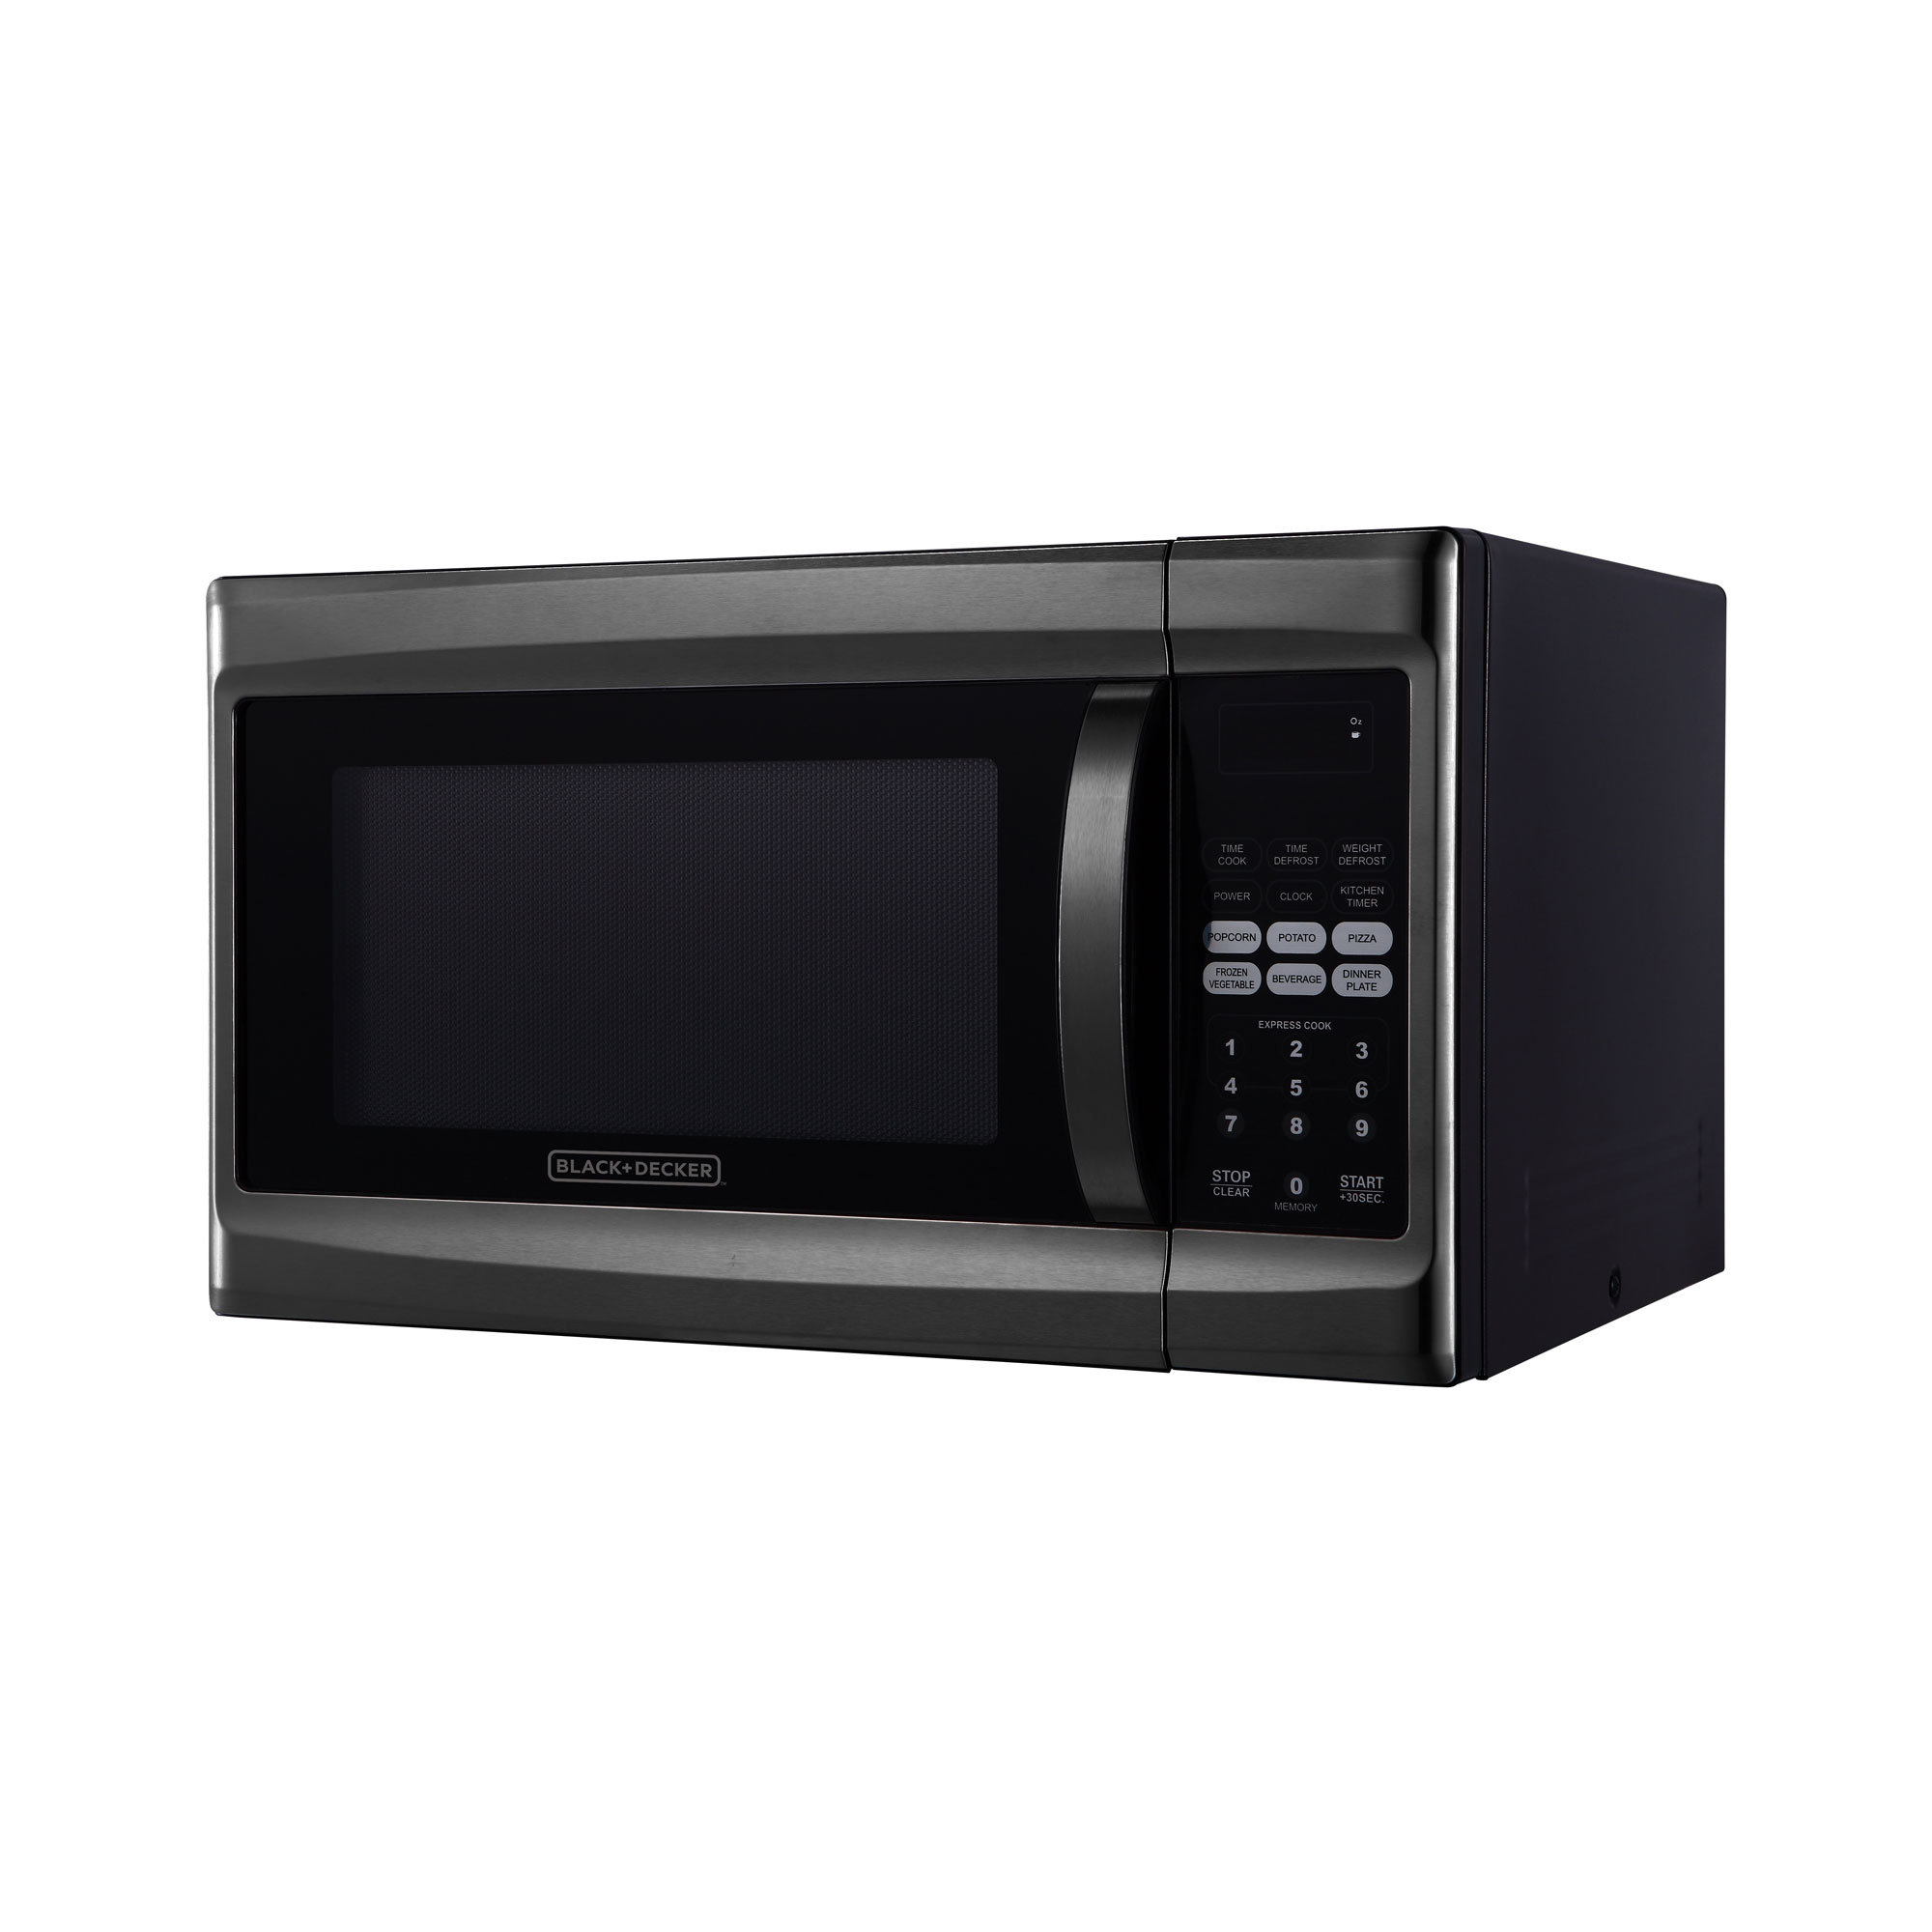 Black & Decker Black Stainless Steel Microwaves